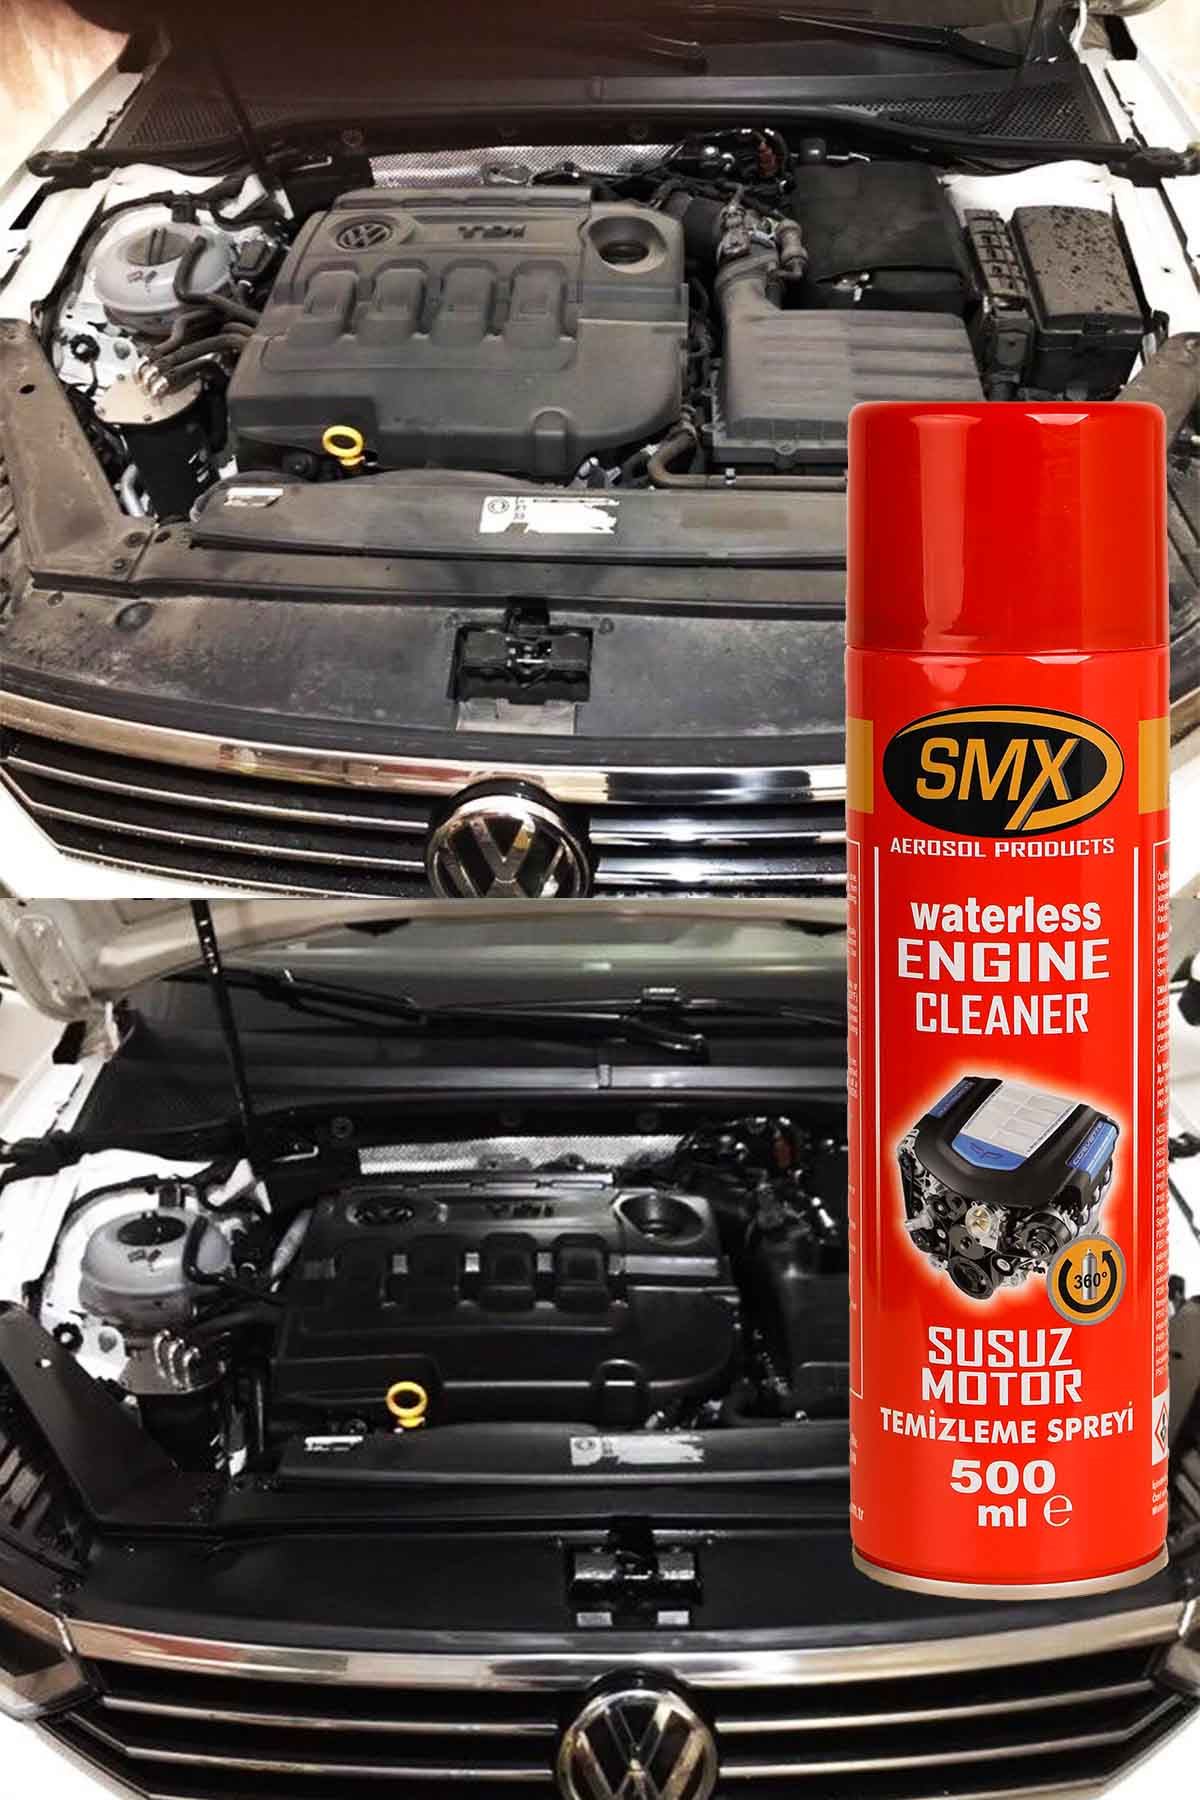 SMX Seramik Cila / Hızlı Cila / Pratik Cila / Susuz Motor Temizleme Spreyi / Lastik Parlatma Spreyi